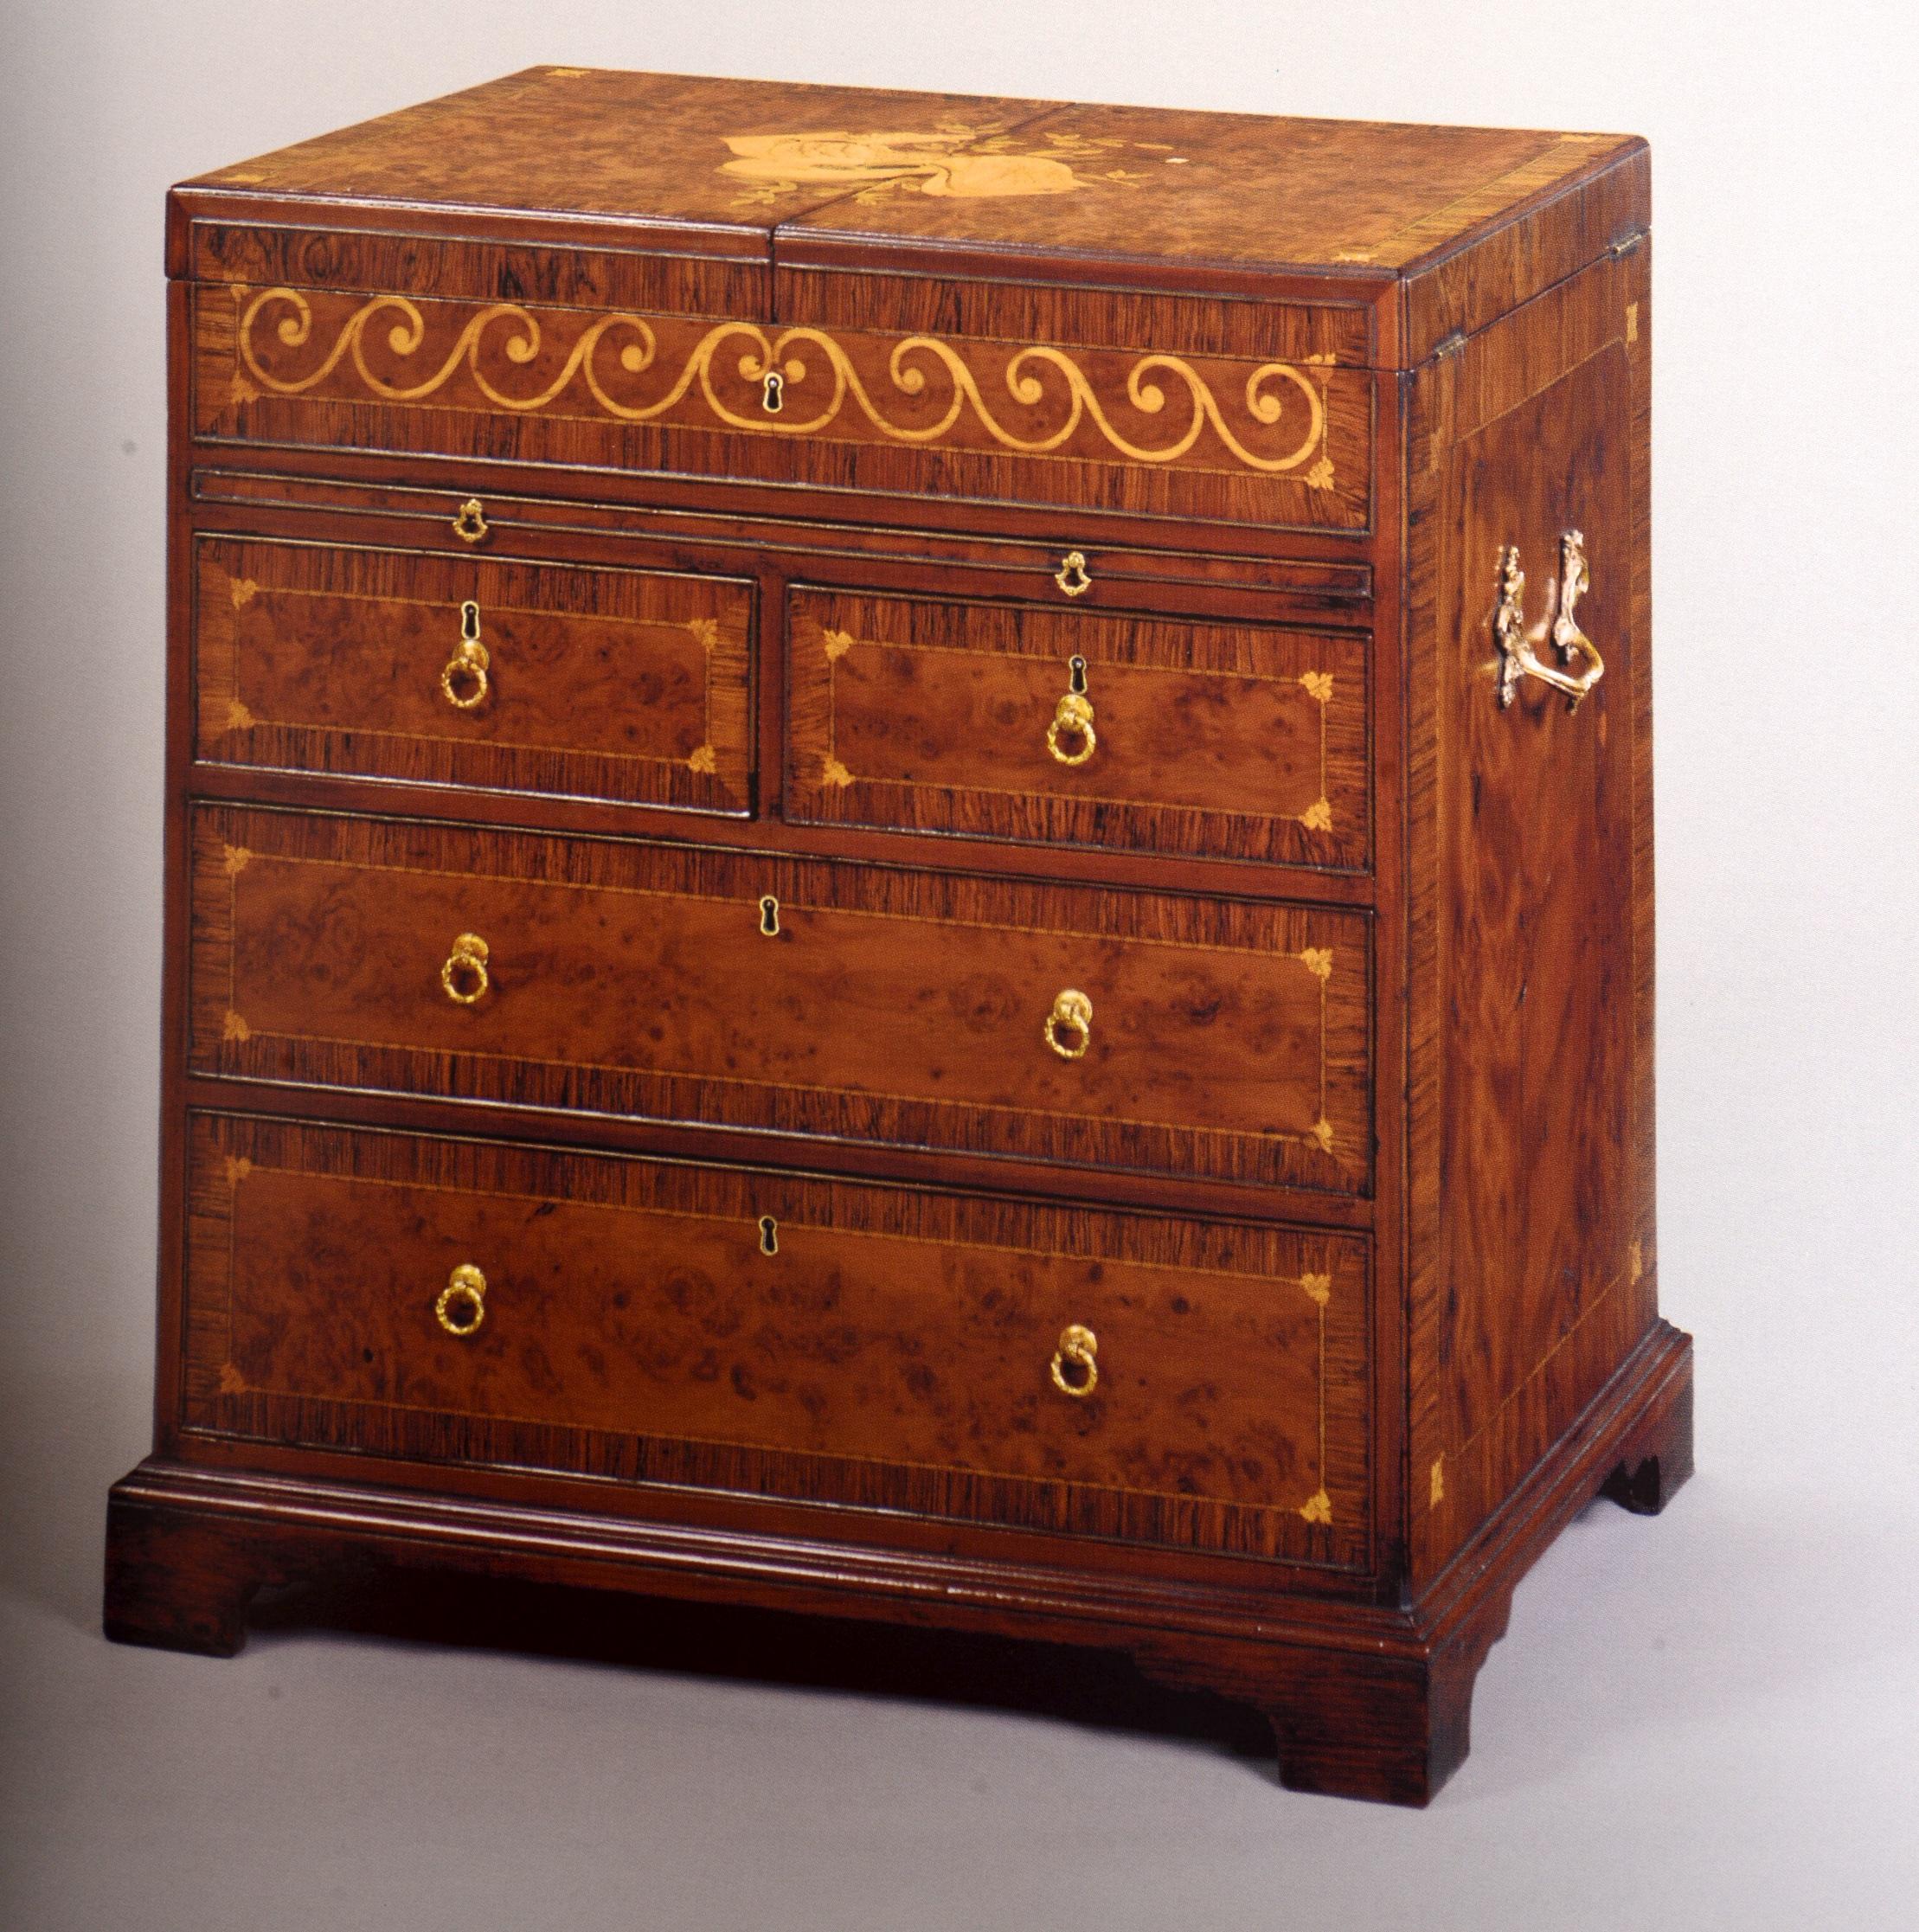 Christie's : Important English Furniture, propriété de la succession de Vander Poel en vente 8